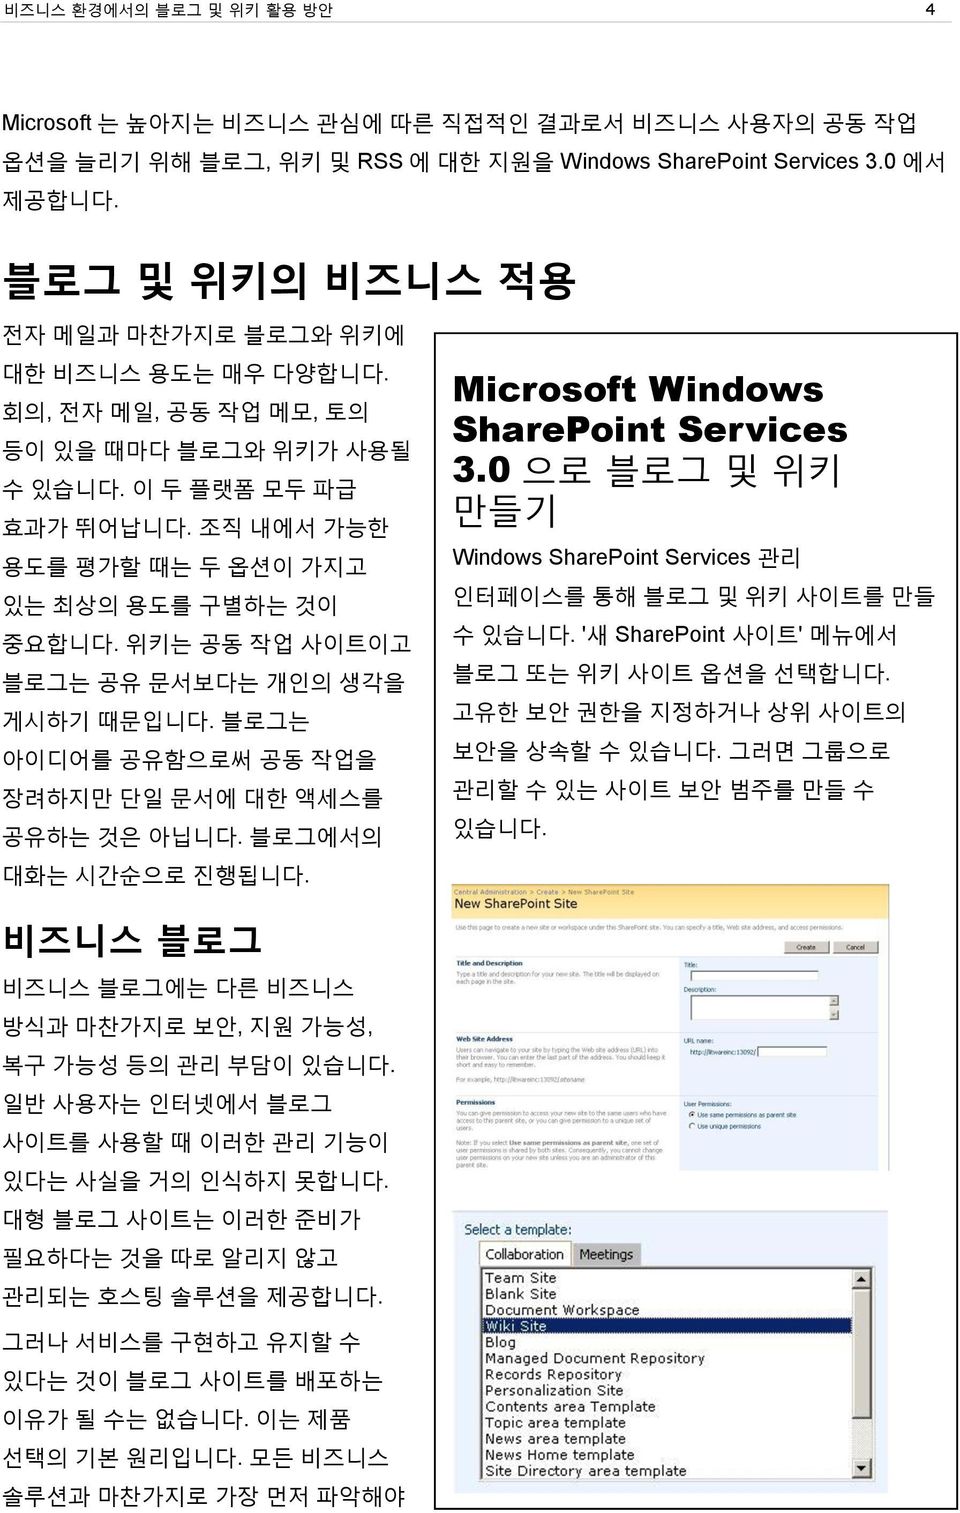 위키는 공동 작업 사이트이고 블로그는 공유 문서보다는 개인의 생각을 게시하기 때문입니다. 블로그는 아이디어를 공유함으로써 공동 작업을 장려하지만 단일 문서에 대한 액세스를 공유하는 것은 아닙니다. 블로그에서의 대화는 시갂숚으로 짂행됩니다. Microsoft Windows SharePoint Services 3.